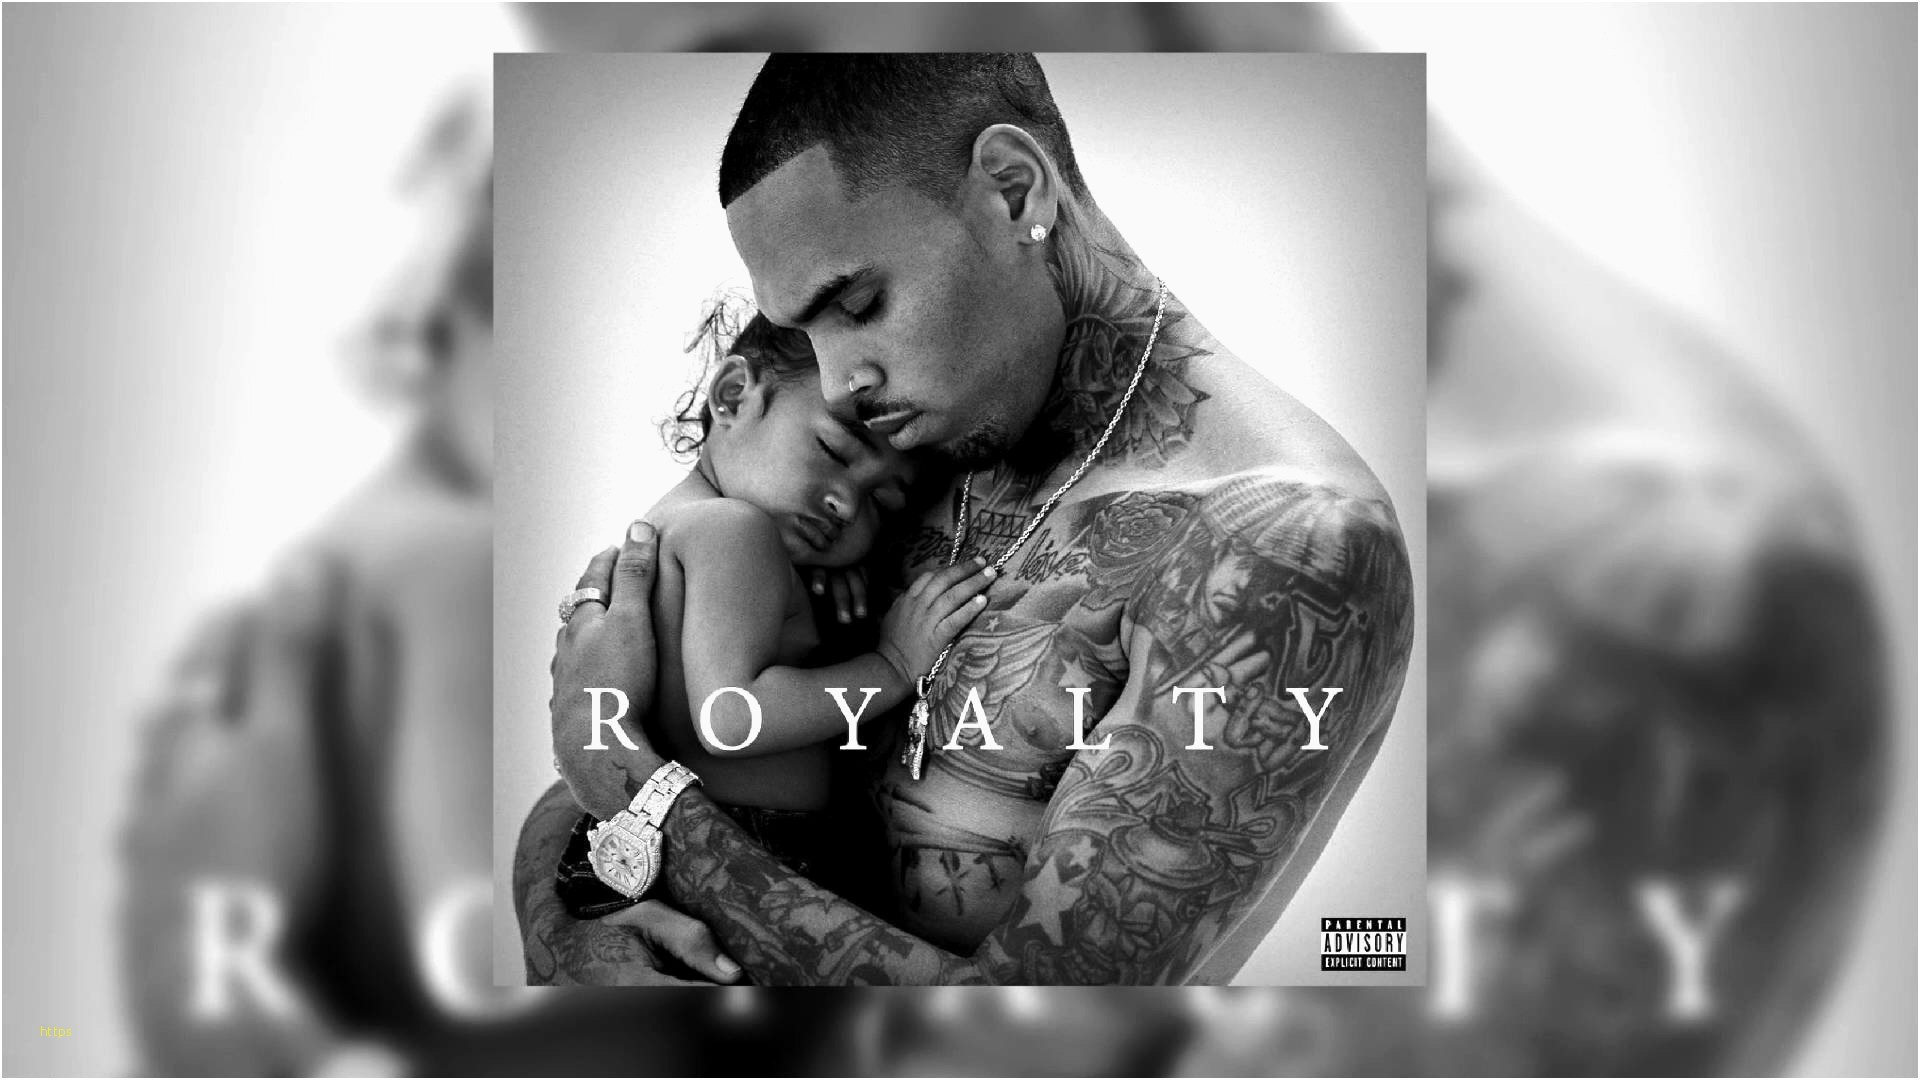 Chris Brown Wallpaper Unique Chris Brown 2018 Wallpapers - Chris Brown Royalty Album - HD Wallpaper 